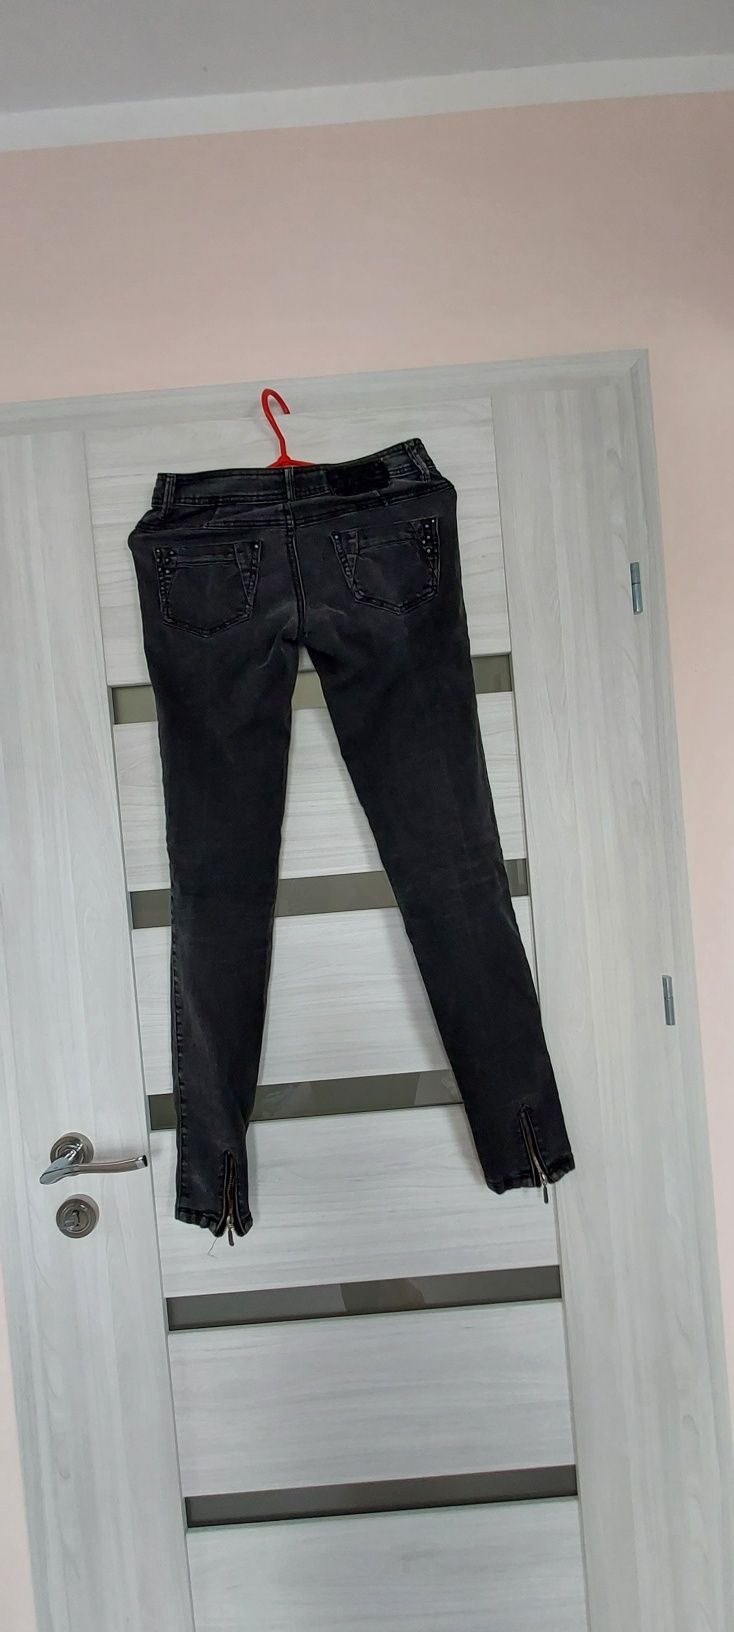 Spodnie czarne rurki jeansowe dziny dżinsowe house xs